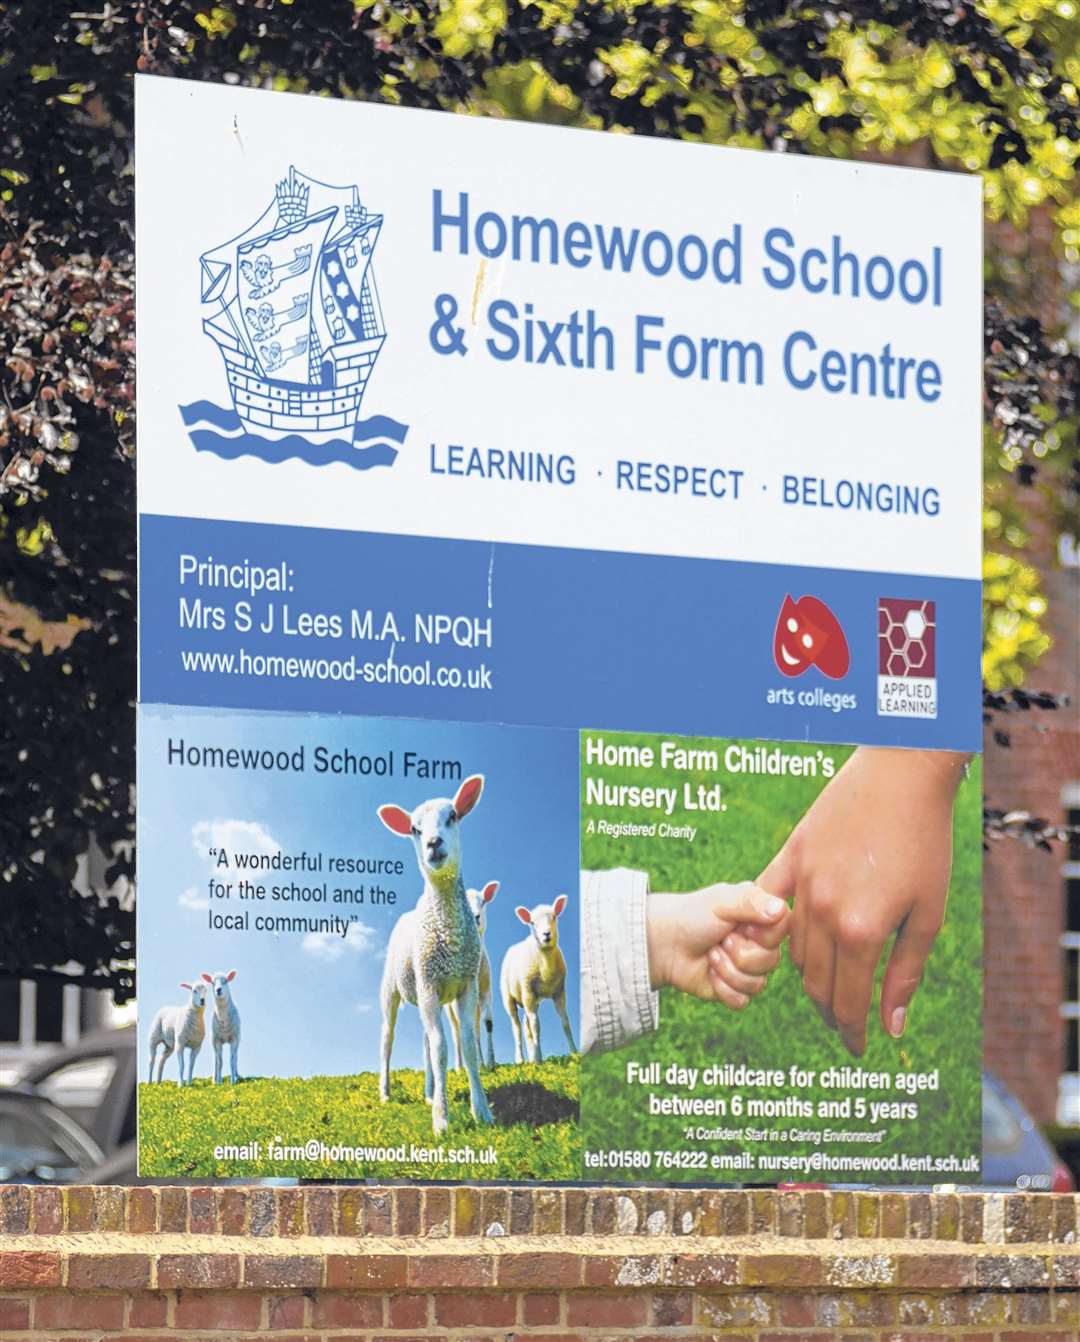 Hams Travel will stop its bus service to Homewood School in Tenterden